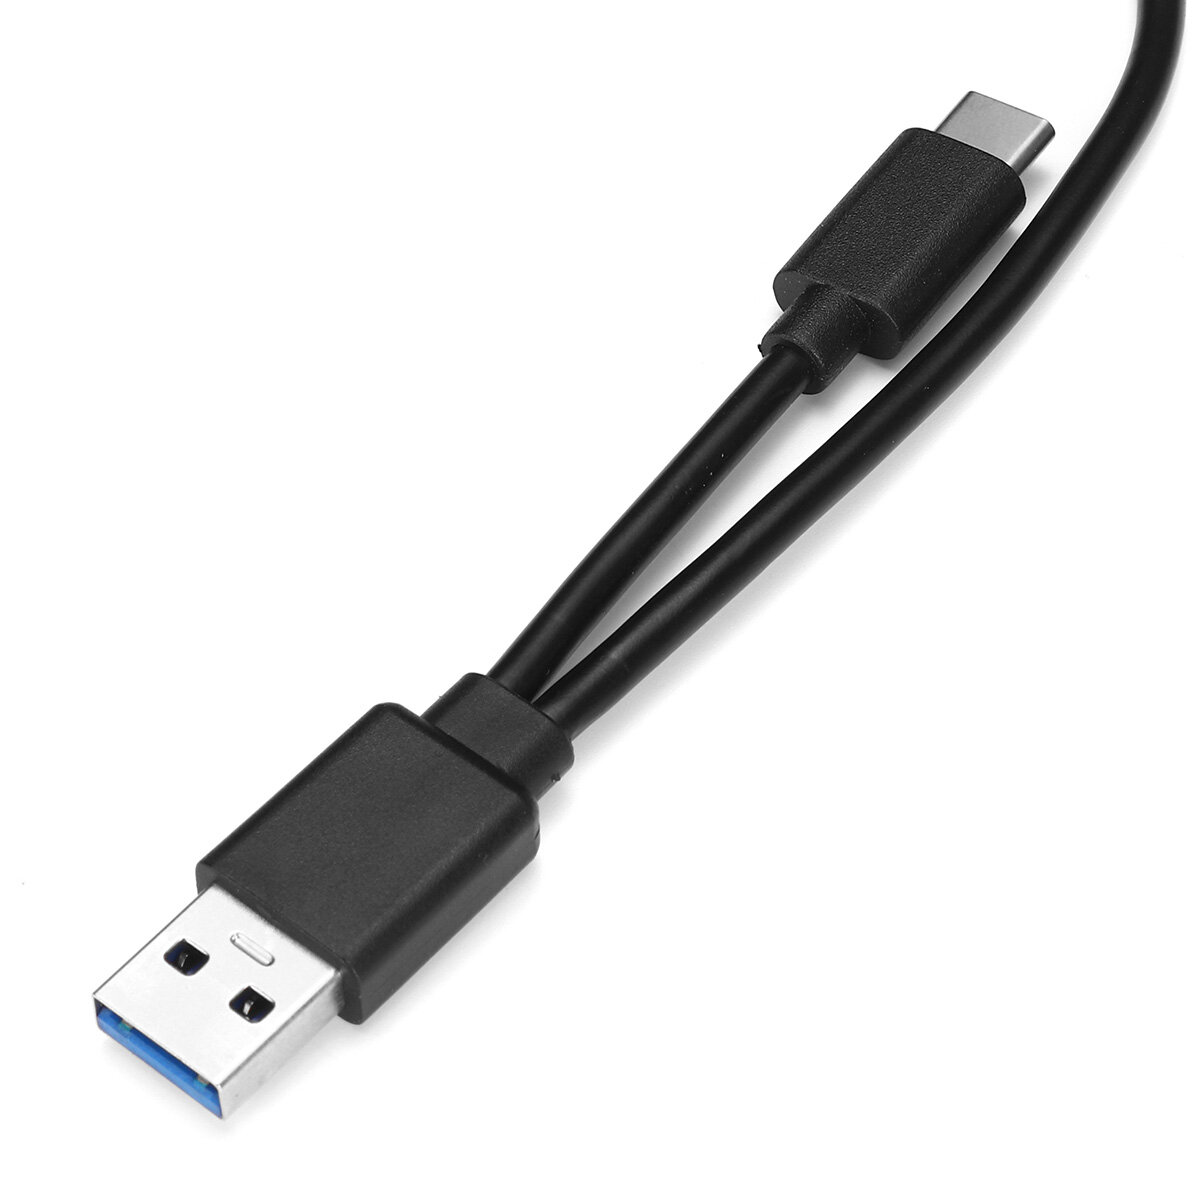 USB 3.0外付けDVD CDドライブType-Cラップトップデスクトップ用スリムポータブル外付けDVD_CD RWバーナードライブ